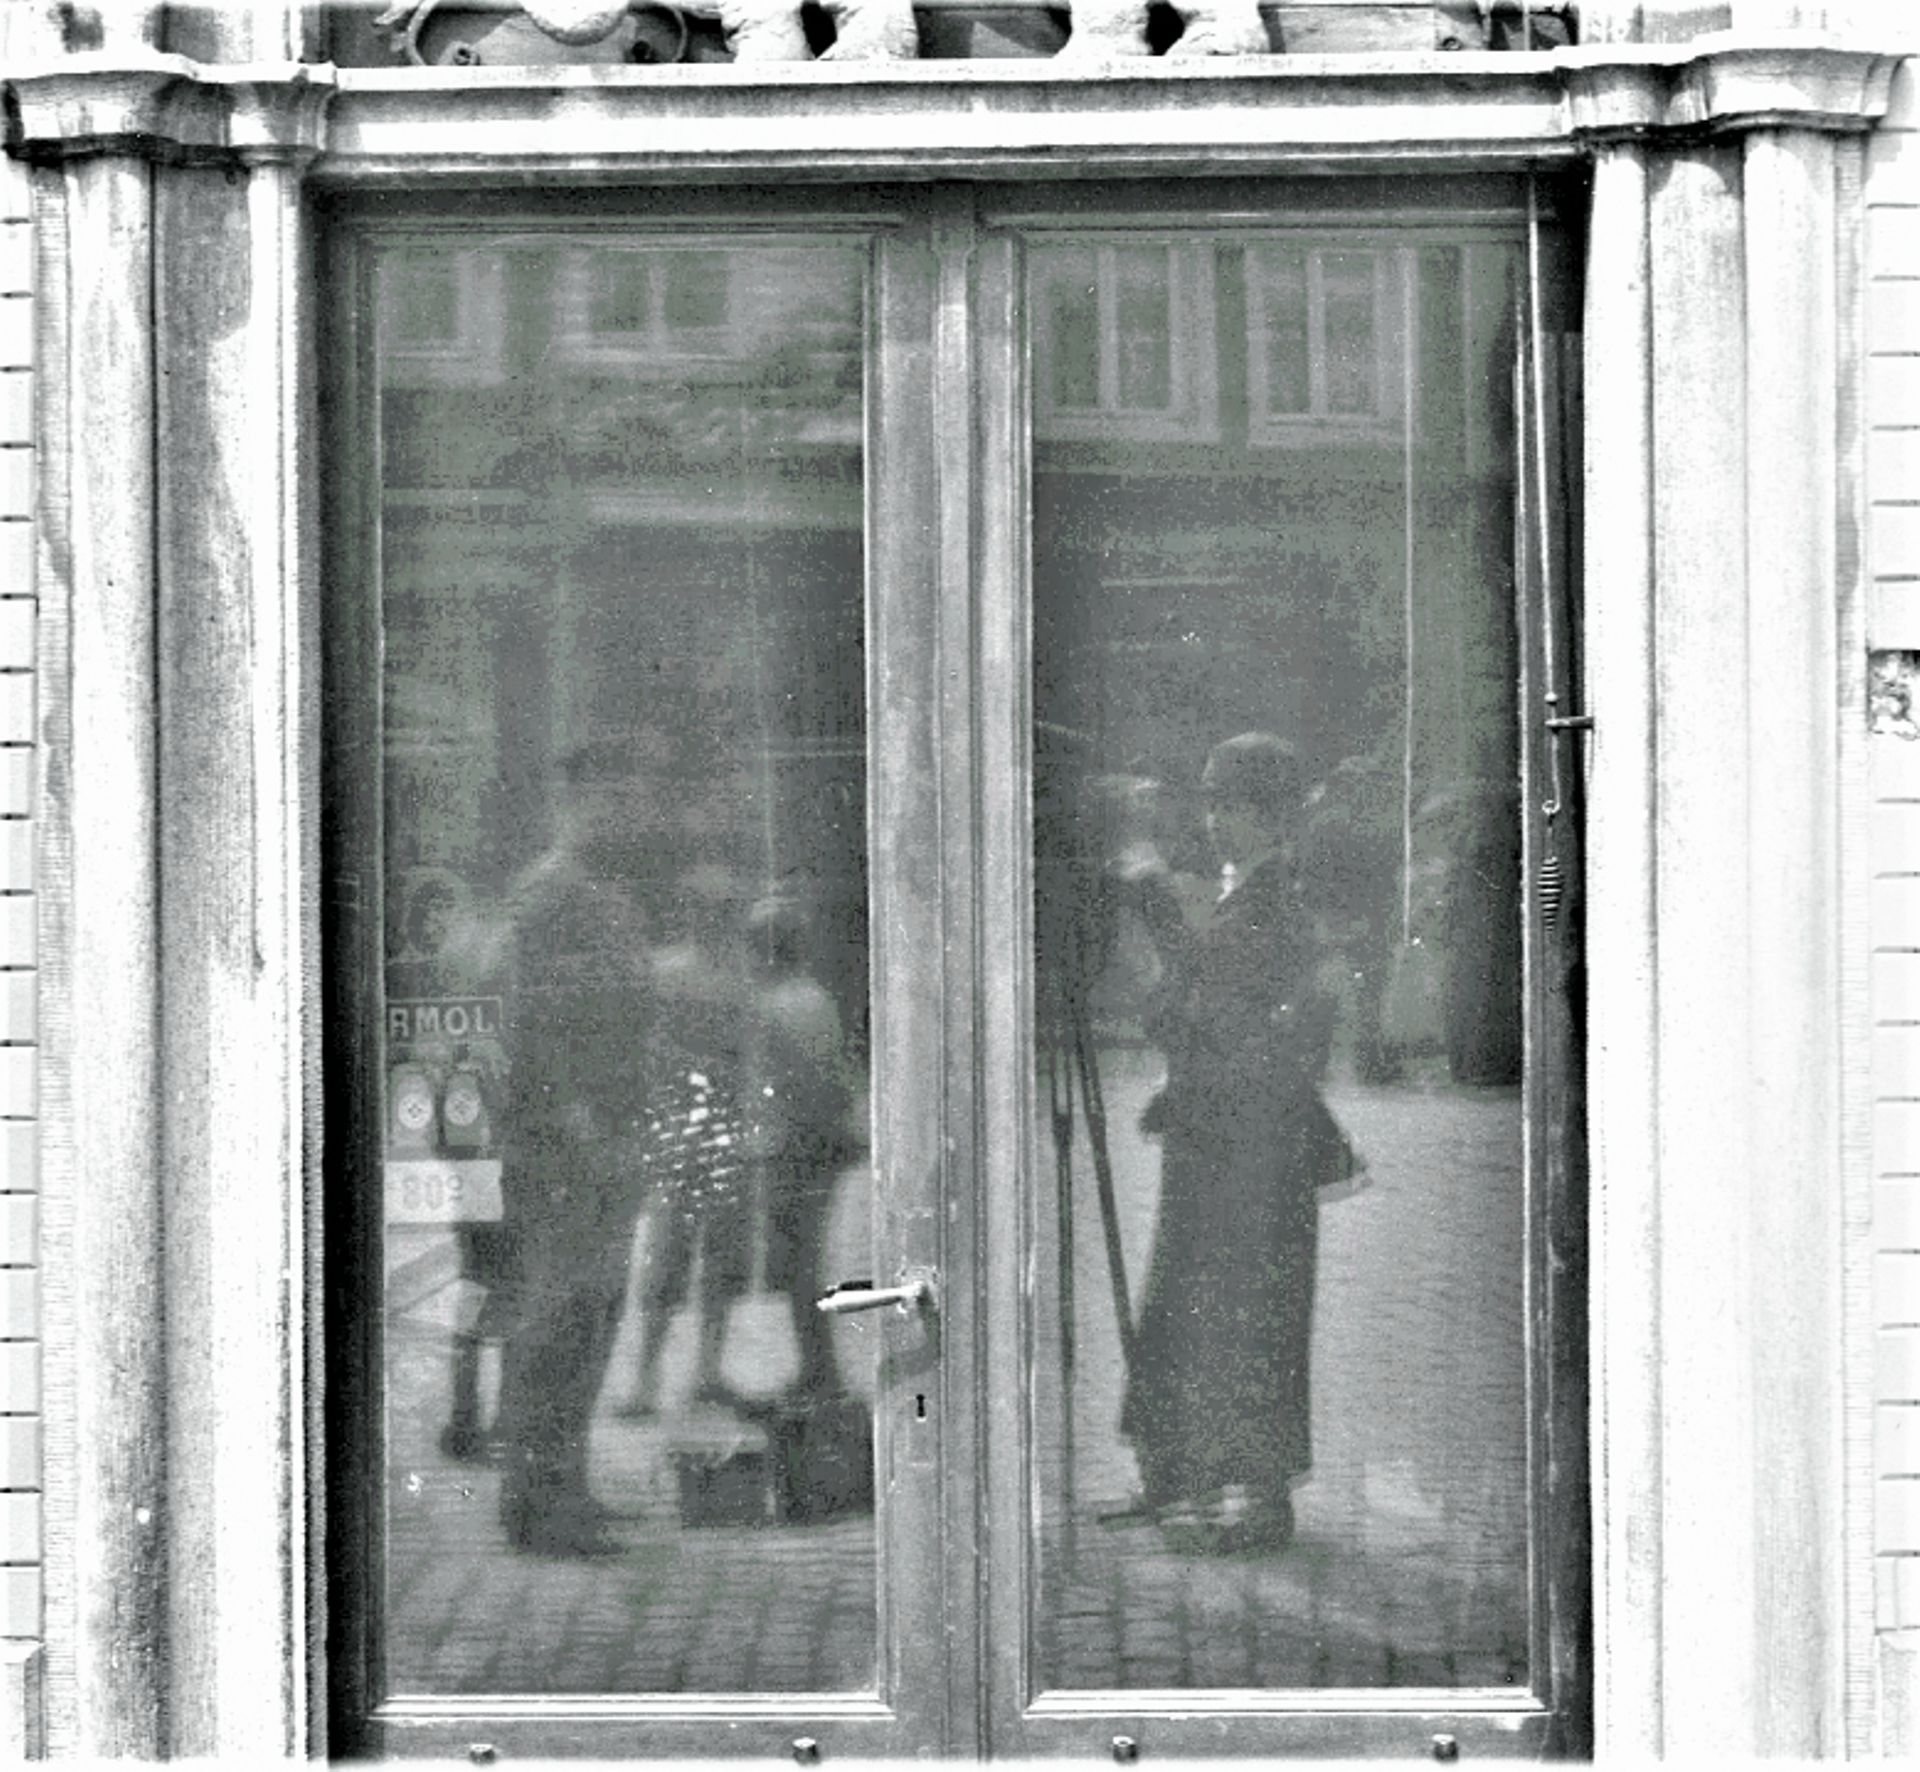 Détail du reflet de Paula Deetjen dans la vitre de la porte de la maison "De Olifant", à Hal.